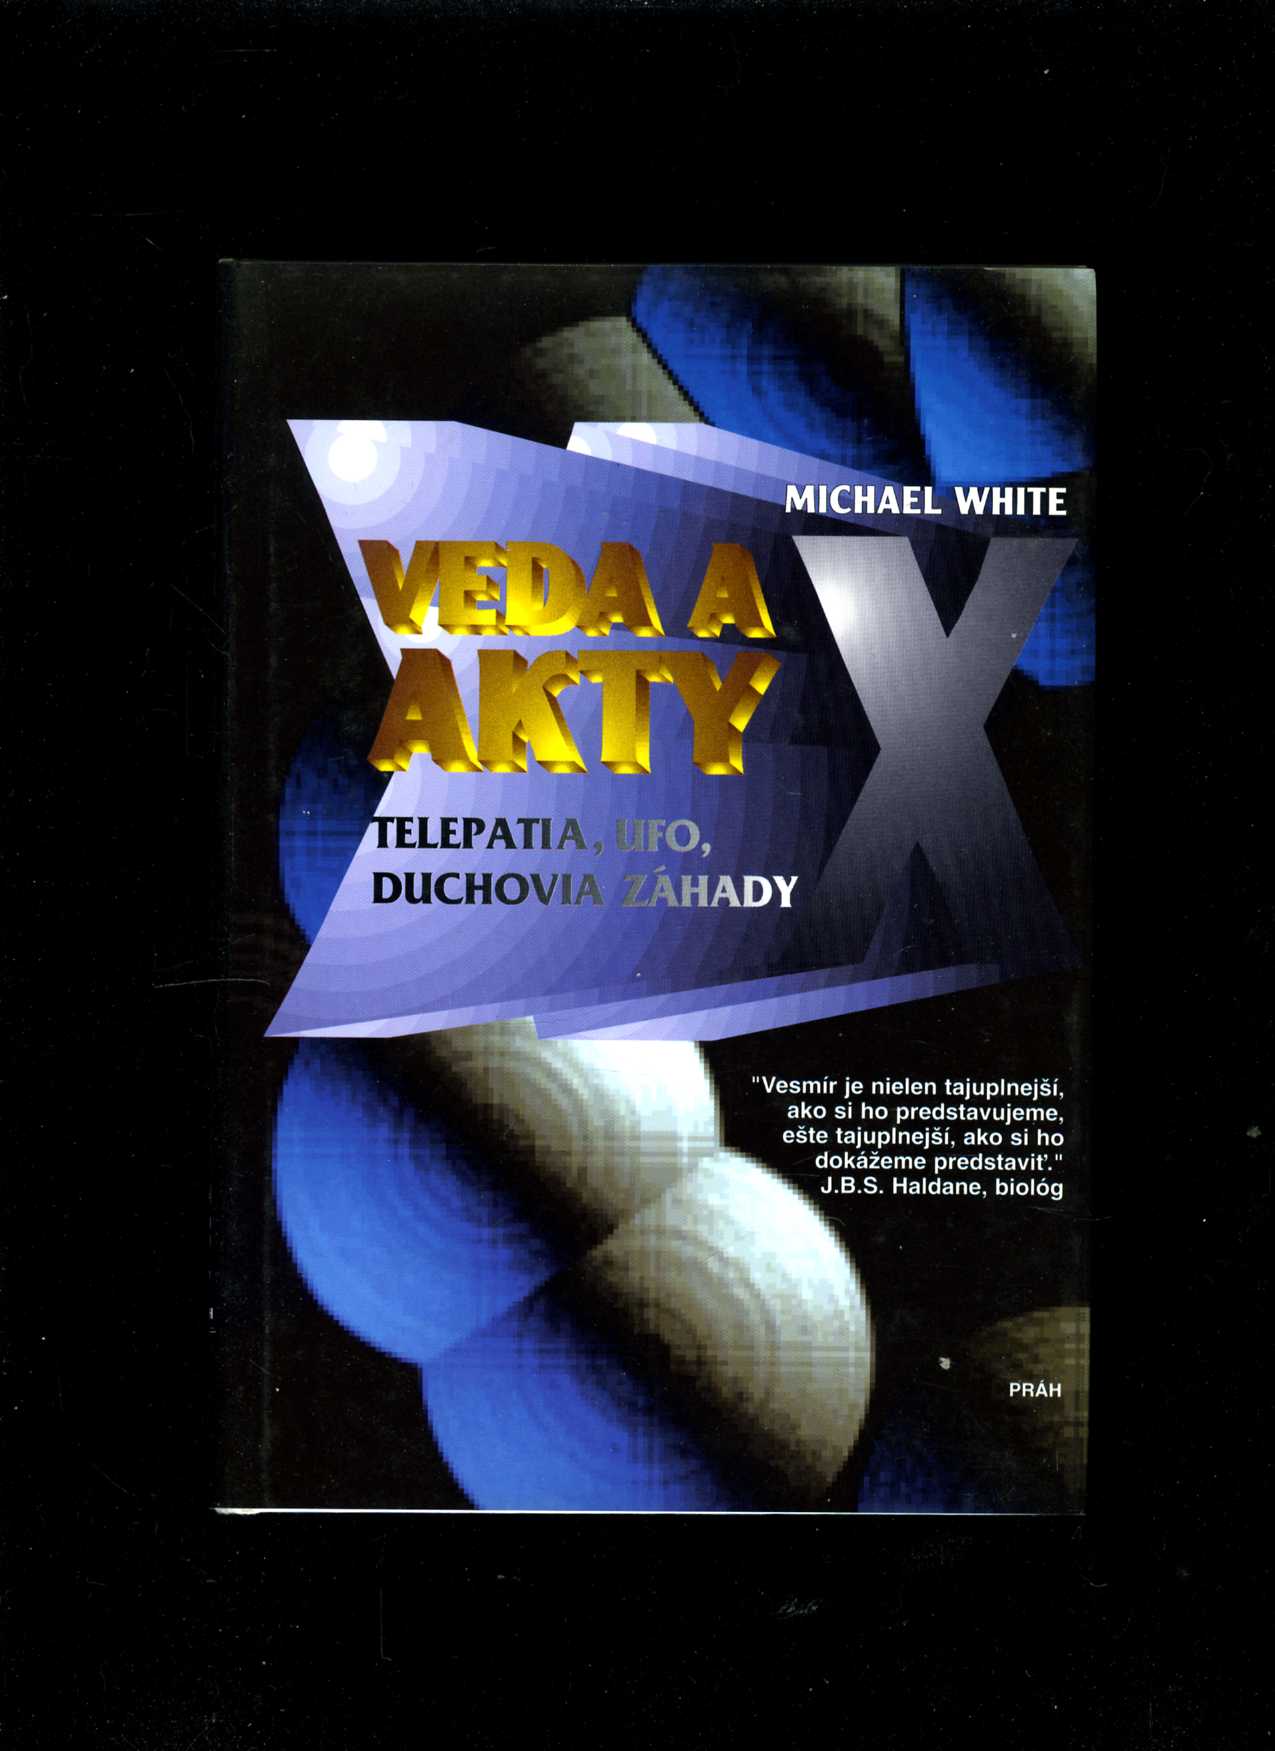 Veda a Akty X (Michael White)